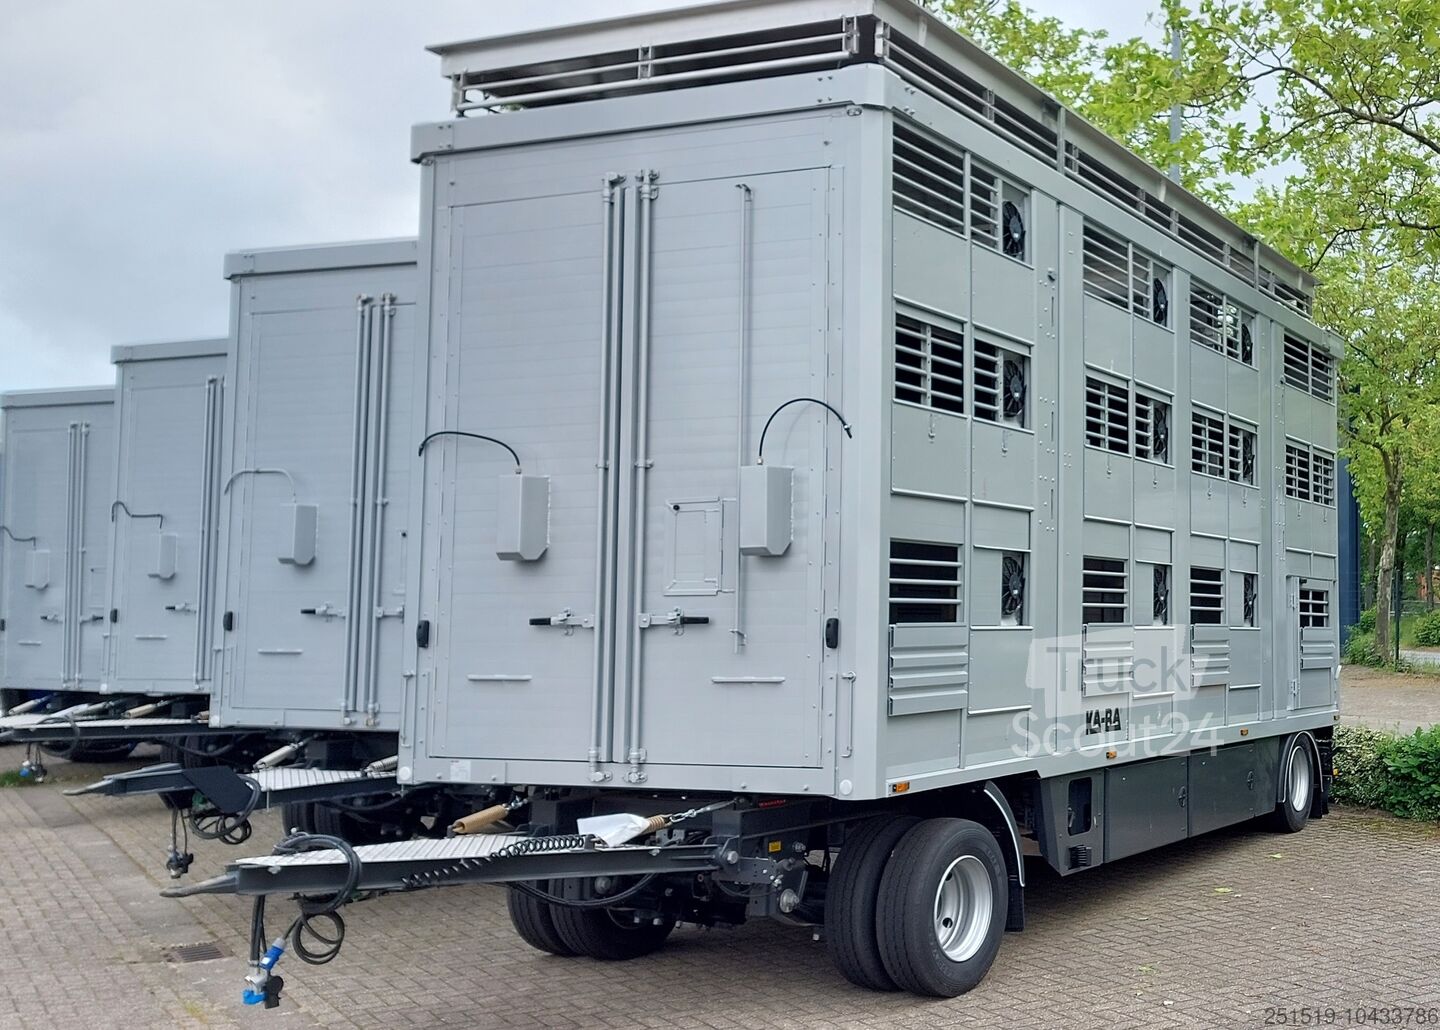 ▷ KA-BA KA-BA Viehtransporter AT 18/73 Tiertransporter gebraucht kaufen bei  TruckScout24